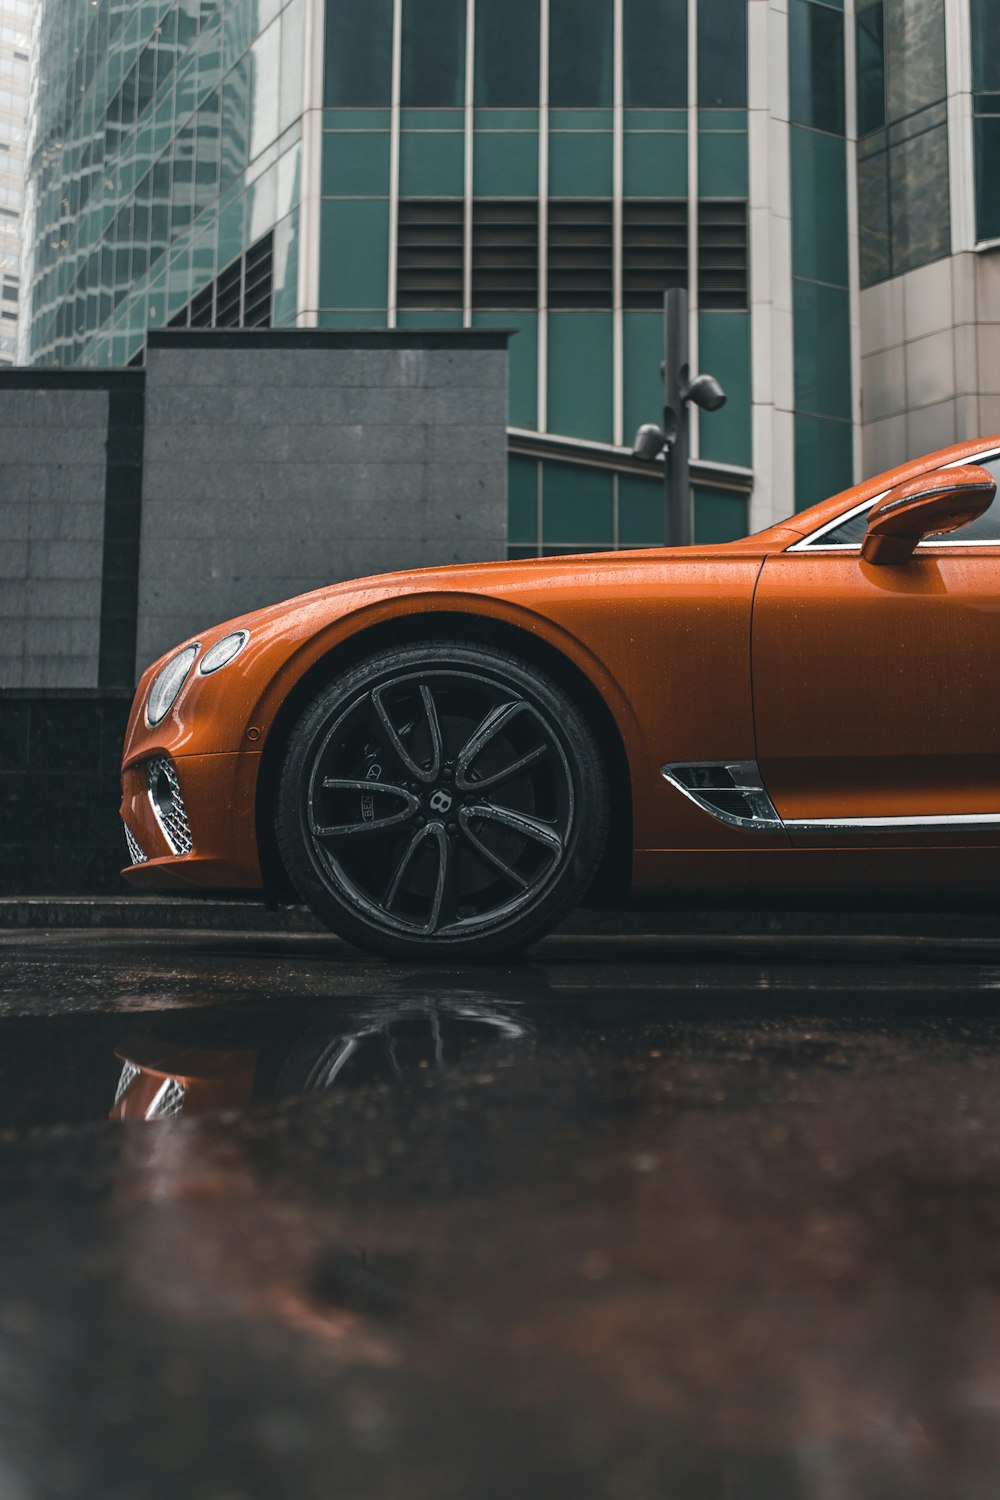 orange car photo – Free Vehicle Image on Unsplash